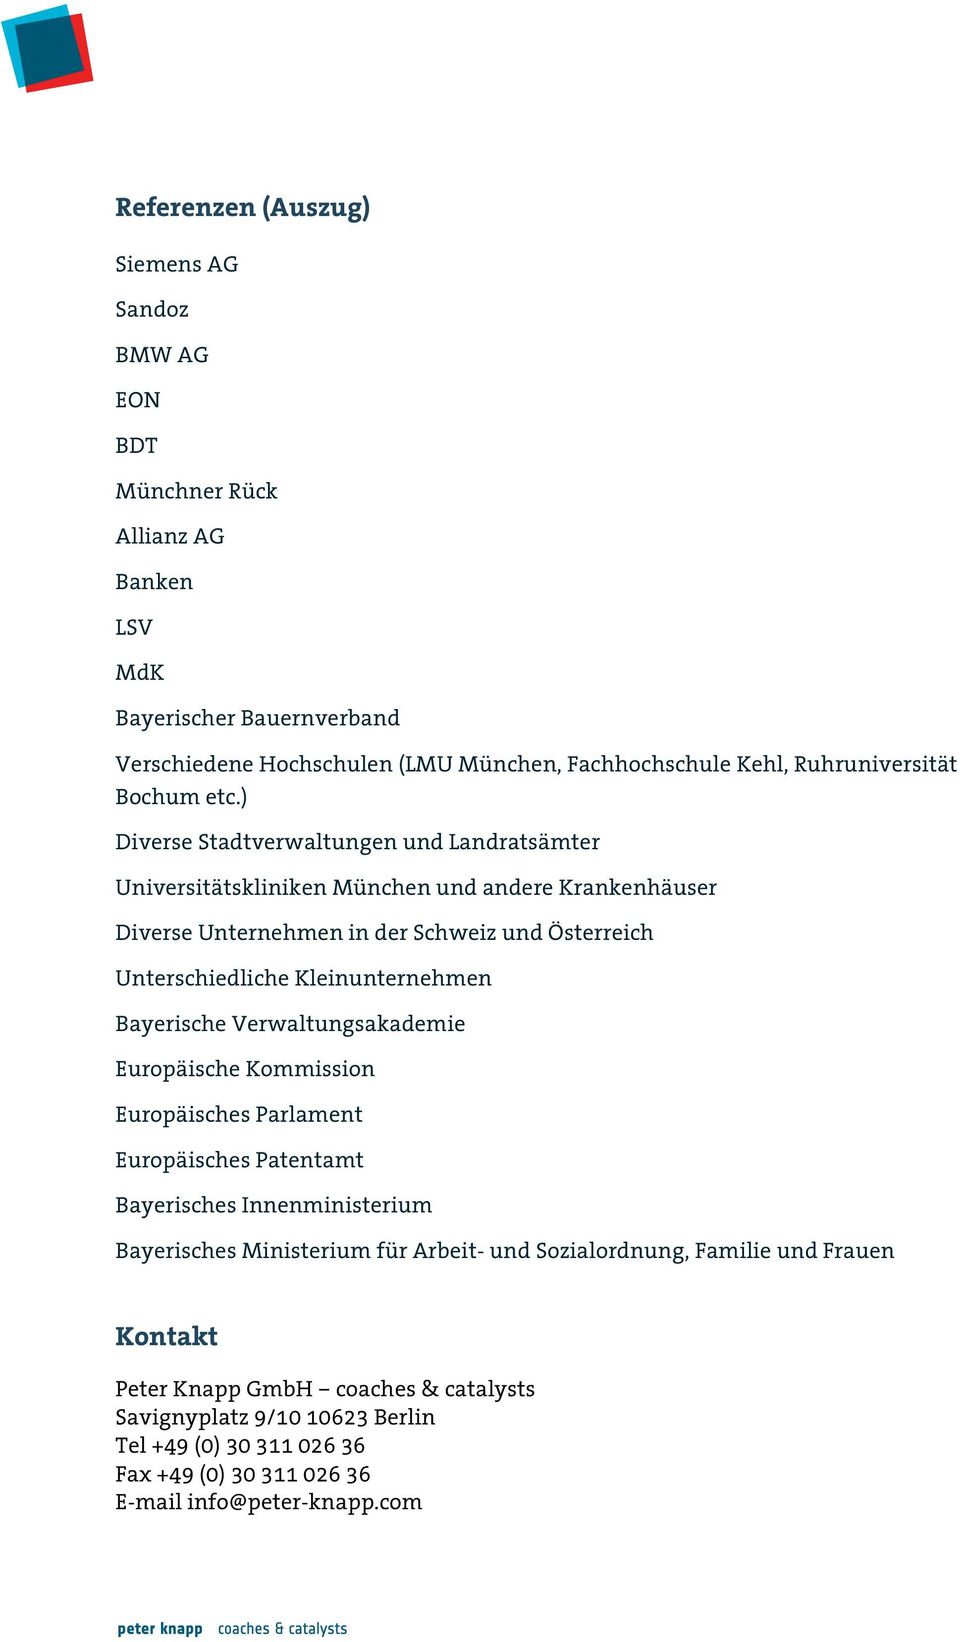 ) Diverse Stadtverwaltungen und Landratsämter Universitätskliniken München und andere Krankenhäuser Diverse Unternehmen in der Schweiz und Österreich Unterschiedliche Kleinunternehmen